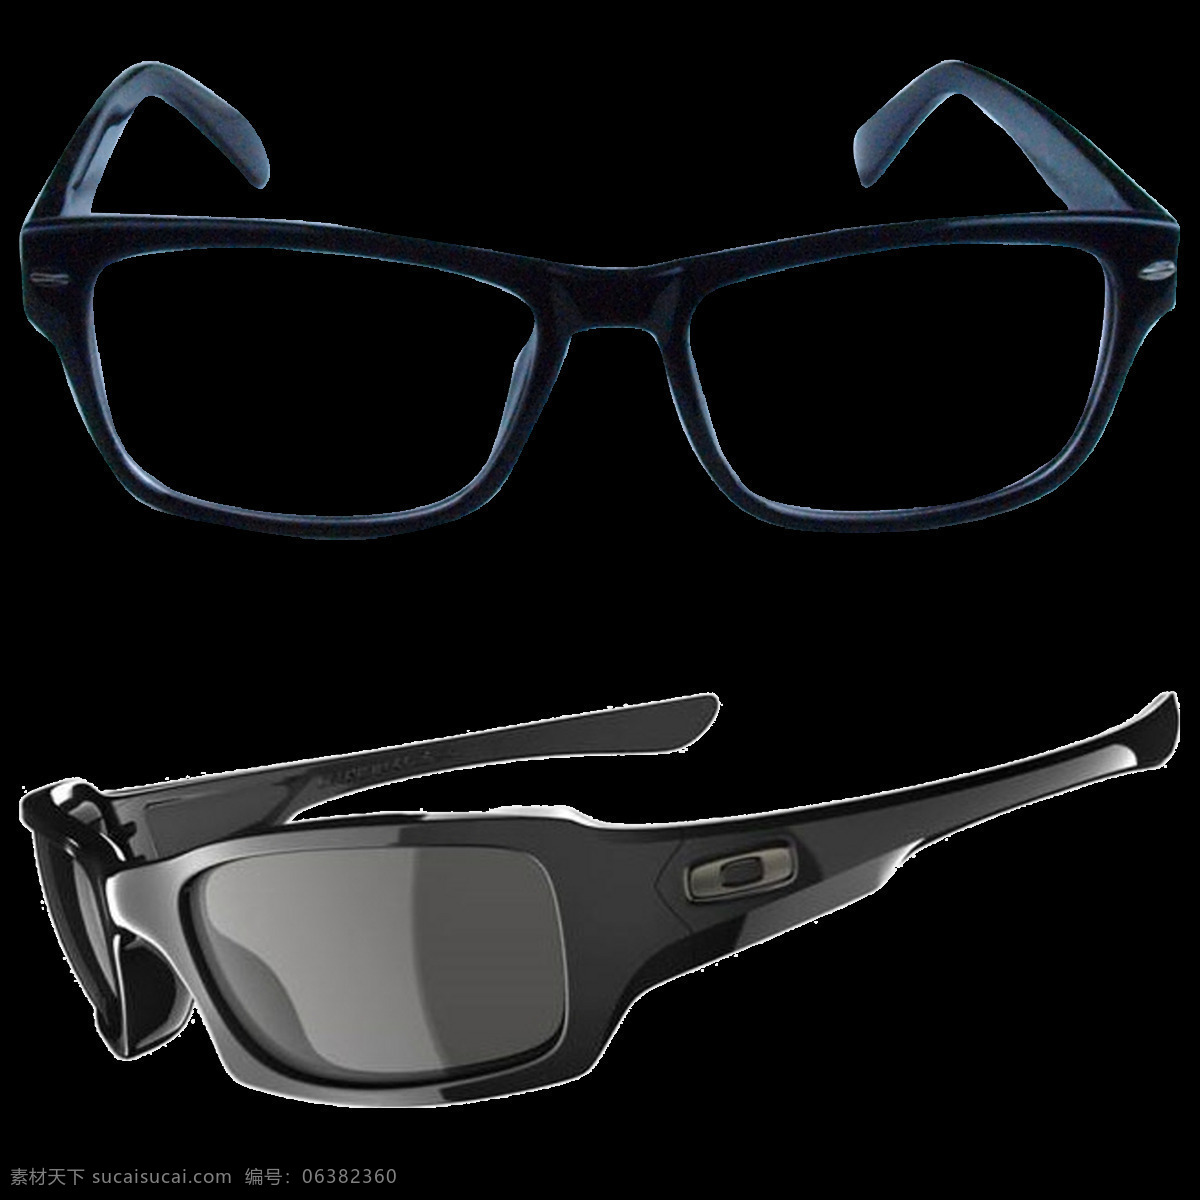 两 种 眼镜 免 抠 透明 图 层 卡通眼镜图片 创意眼镜图片 眼镜图片大全 唯美 时尚 眼镜广告图片 墨镜图片 太阳镜图片 近视眼镜 眼镜海报 卡通眼镜 黑框眼镜